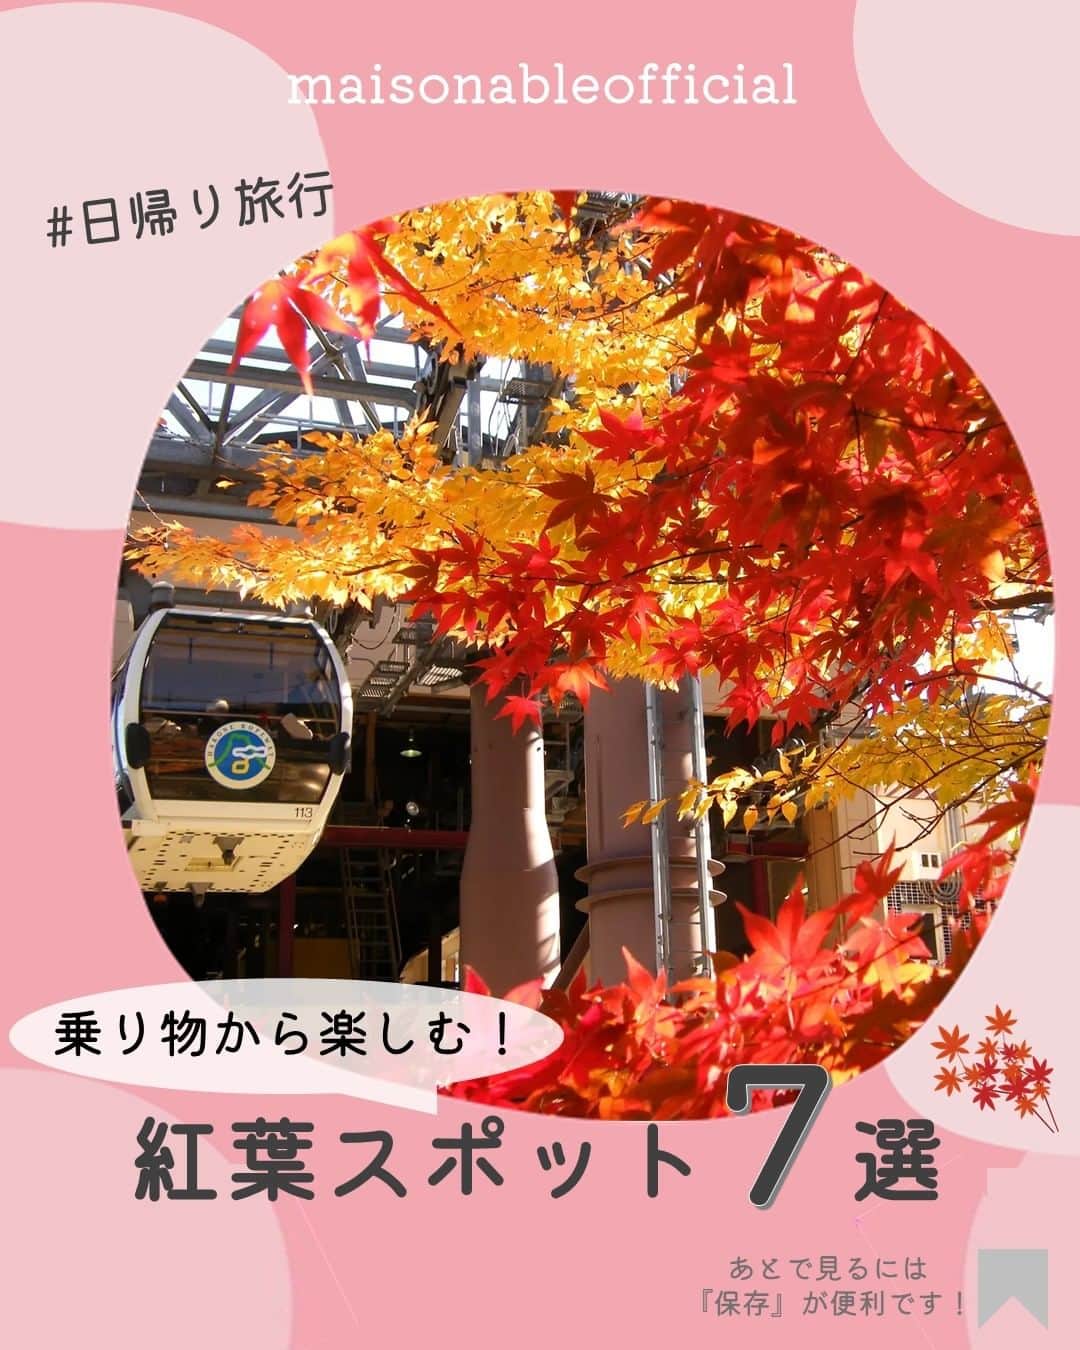 MAISON ABLE CLUBのインスタグラム：「行ってみたい！と思ったら【いいね♡】をお願いします！ 後から見返せる『保存』も便利です📝  【 乗り物から楽しむ！紅葉スポット ７選】  日本の秋といえばやっぱり紅葉ですよね🍁  様々な紅葉スポットがありますが、 今回は関東圏を中心に 乗り物から楽しめる紅葉スポットをご紹介します！  いつもと違う視線で見ると新しい発見があるかも？👀  ぜひ紅葉シーズンに訪れてみてください！  ｰｰｰｰｰｰｰｰｰｰｰｰｰｰｰｰｰｰｰｰｰｰｰｰｰｰｰ  01 ｜東京都 #skybus 📍東京都23区内を循環  02 ｜神奈川県 #箱根ロープウェイ 📍神奈川県足柄下郡箱根町湯本  03｜埼玉県 #長瀞ライン下り 📍埼玉県秩父郡長瀞町 📷 @3maru2photo2gram  04｜​群馬県 #わたらせ渓谷鐵道 📍群馬県みどり市 📷 @watarase.keikoku.railway  05｜千葉県 #亀山湖紅葉クルーズ 📍千葉県君津市  06｜茨城県 #筑波山ケーブルカー 📍茨城県つくば市筑波  07｜長野県 #富士見高原リゾート 📍長野県諏訪郡富士見町  ※掲載内容は作成時点の情報です。 お出かけの際は必ず公式ホームページをご確認ください。 ⁡ ¨¨¨¨¨¨¨¨¨¨¨¨¨¨¨¨¨¨¨¨¨¨¨¨¨¨¨¨¨¨¨¨¨¨¨  ひとり暮らし生活に役立つ 「衣・食・住」に関する最新トレンド情報をお届けしています！🏡  ▷ @maisonableofficial  MAISON ABLEは、 ひとり暮らしの女性を応援するために お部屋探しのエイブルが立ち上げた 365日生活サポートサービスです！ お得なクーポンやサービスを随時配信しています！😊 詳しくはプロフィールTOPのリンクをご覧ください📖✨  ¨¨¨¨¨¨¨¨¨¨¨¨¨¨¨¨¨¨¨¨¨¨¨¨¨¨¨¨¨¨¨¨¨¨¨  #エイブル #メゾンエイブル #ひとり暮らし #一人暮らし #休日の過ごし方 #週末の過ごし方 #日帰り #観光 #旅行 #女子旅 #東京 #オープントップバス #箱根 #ロープウェイ #長瀞 #わたらせ渓谷 #トロッコ列車 #亀山湖 #筑波山 #天空カート #紅葉 #紅葉スポット #紅葉ライトアップ」